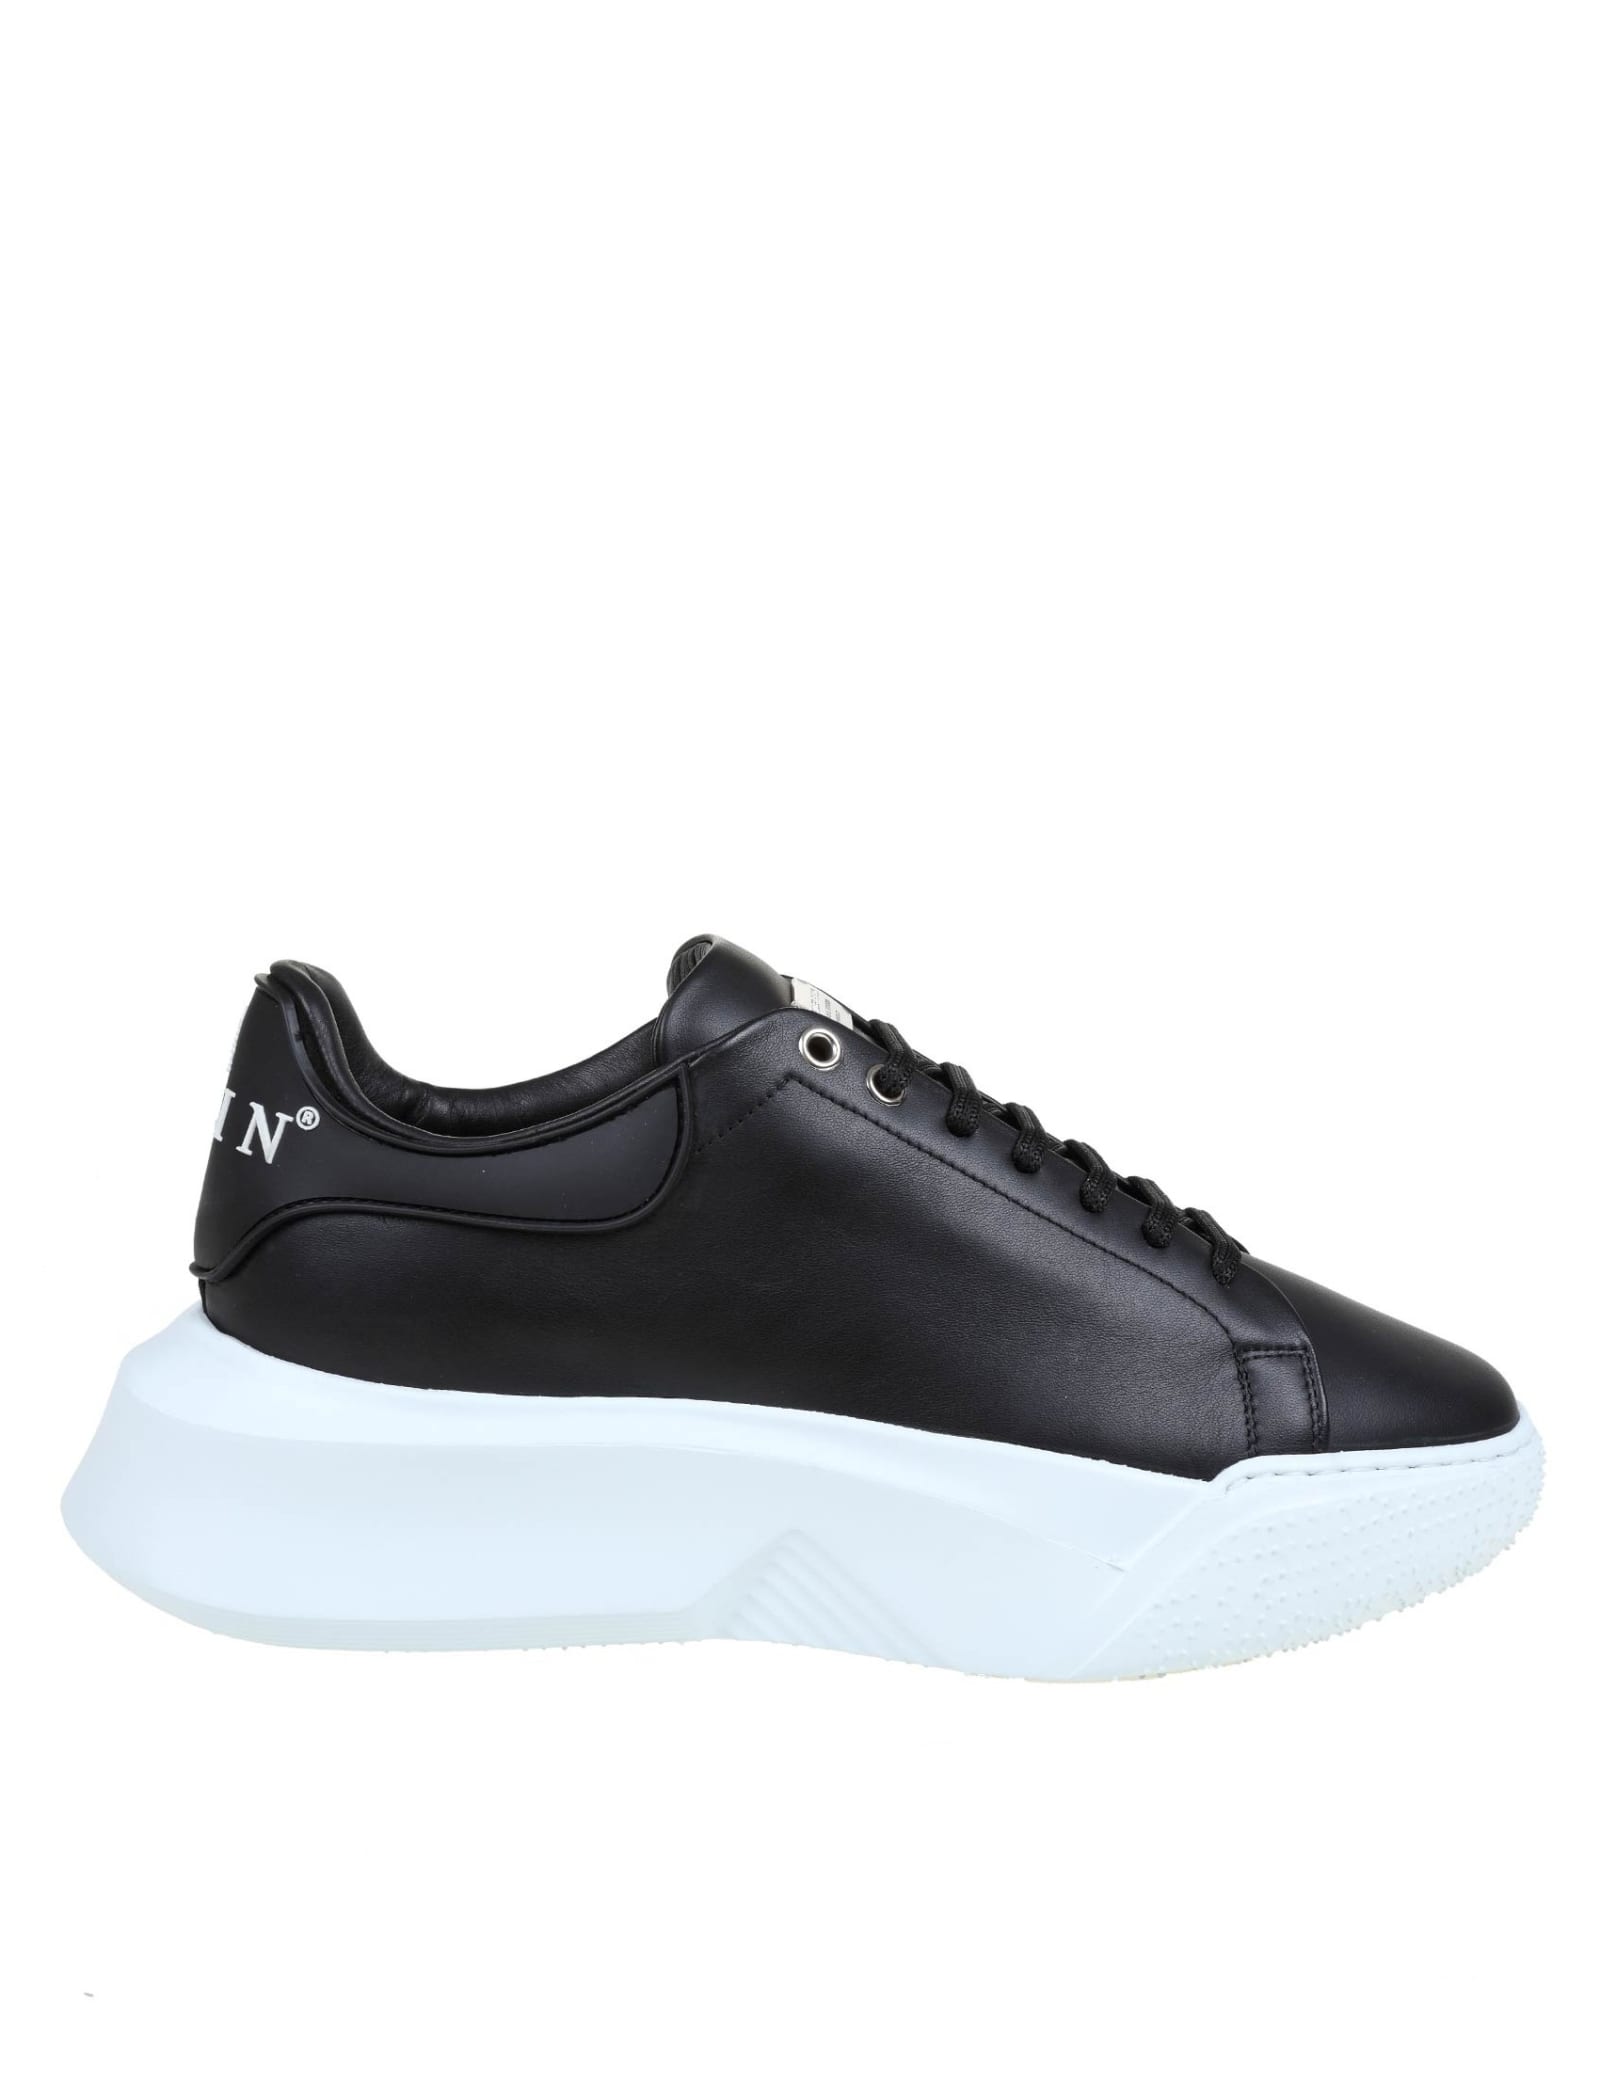 Philipp Plein Black Leather Lo-top Sneakers